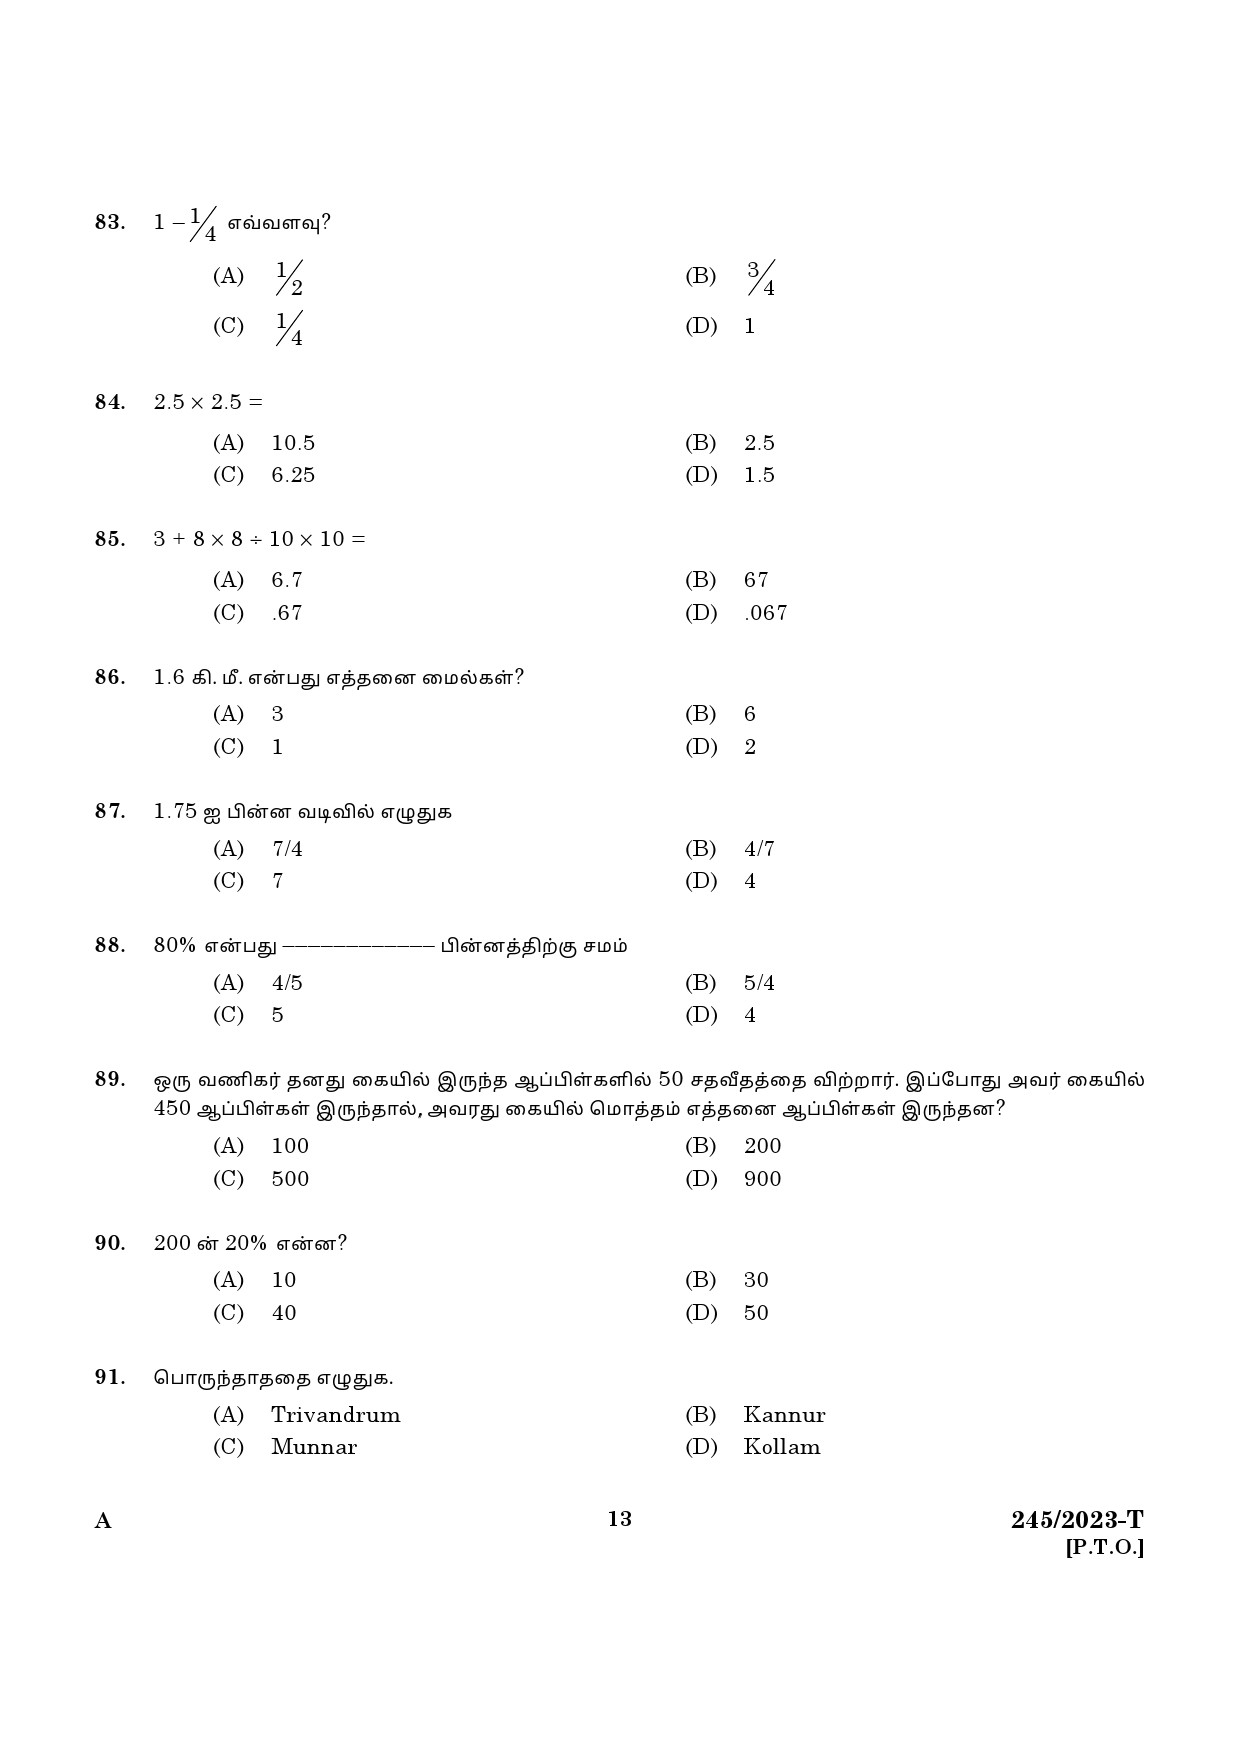 KPSC LGS Tamil Exam 2023 Code 2452023 T 11